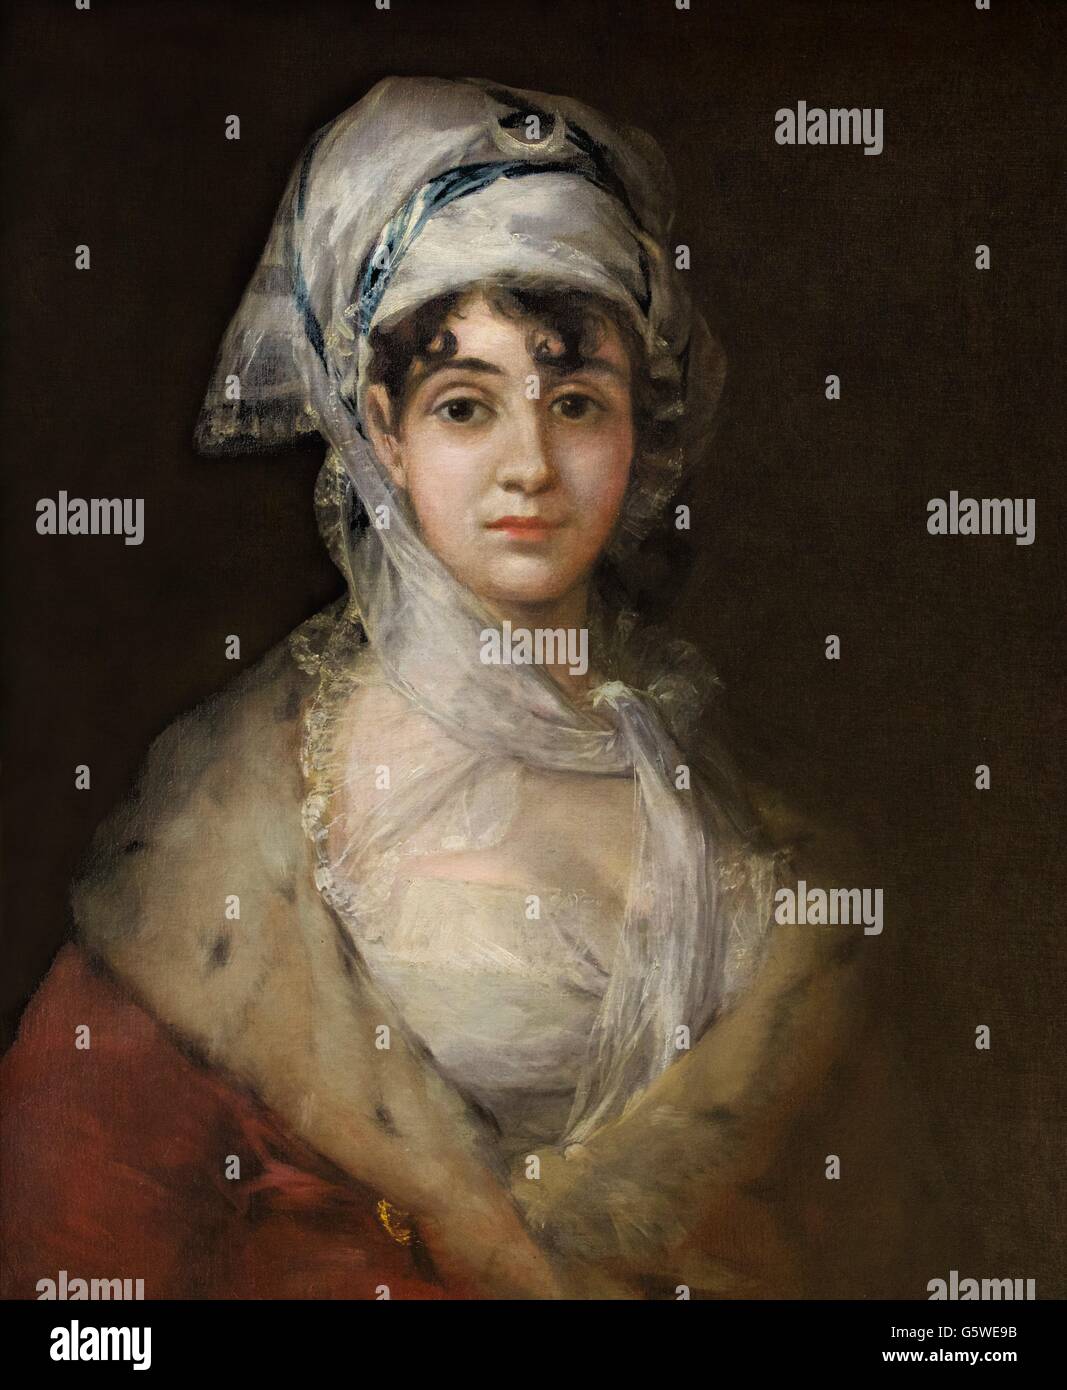 Portrait de l'actrice Antonia Zarate, par Francisco Goya, circa 1810-1811. Musée d'état de l'Ermitage, Saint-Pétersbourg, Russie Banque D'Images